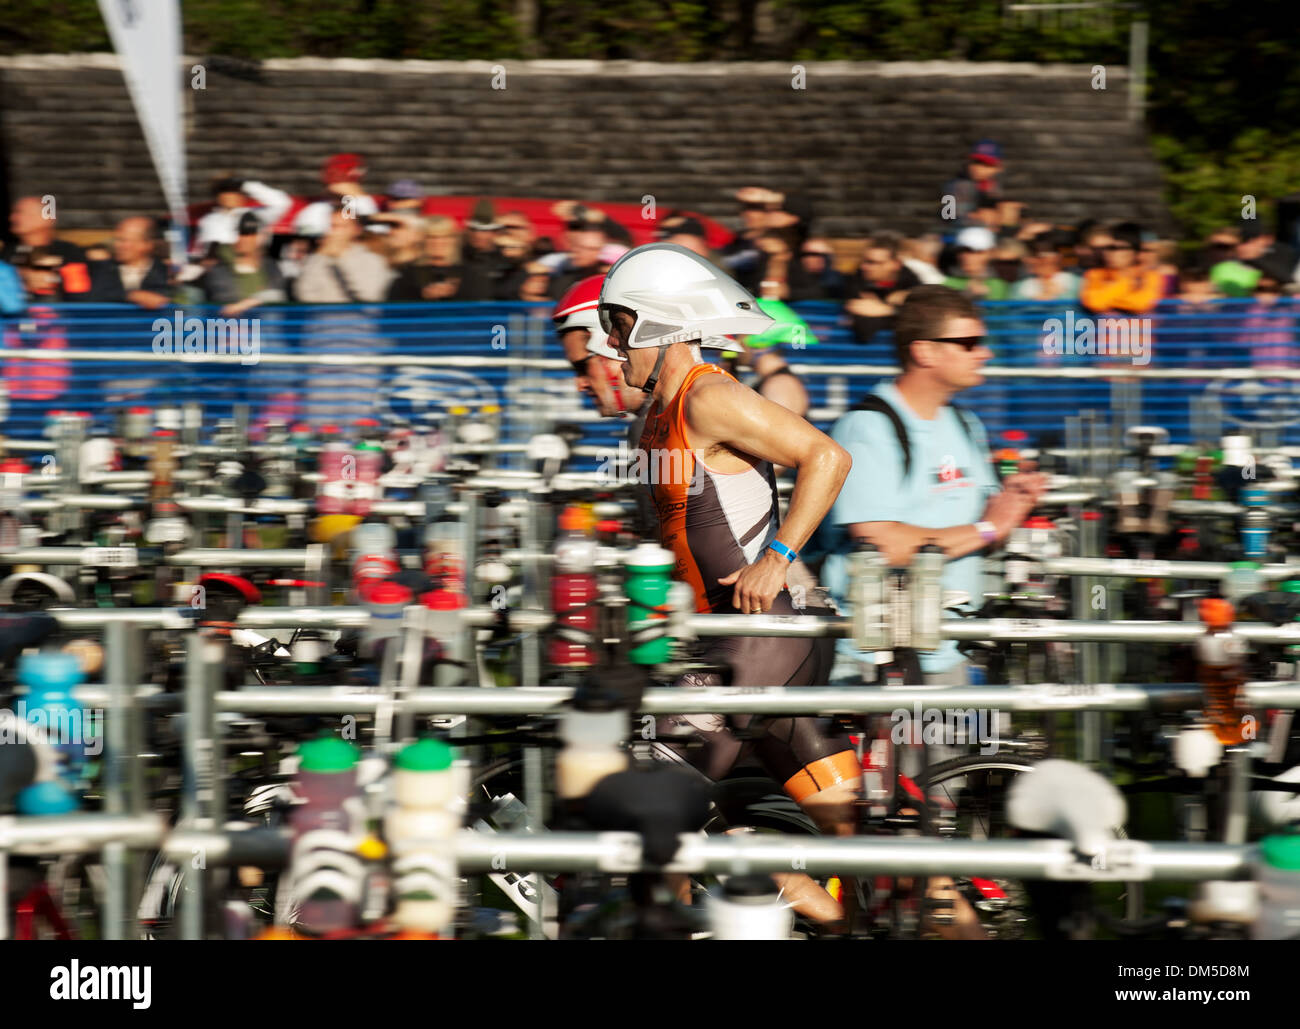 Rennfahrer starten die Fahrrad-Etappe des Rennens an der Wechselzone Rad. 2013-Whistler-Ironman-Rennen. 25. August 2013. Stockfoto